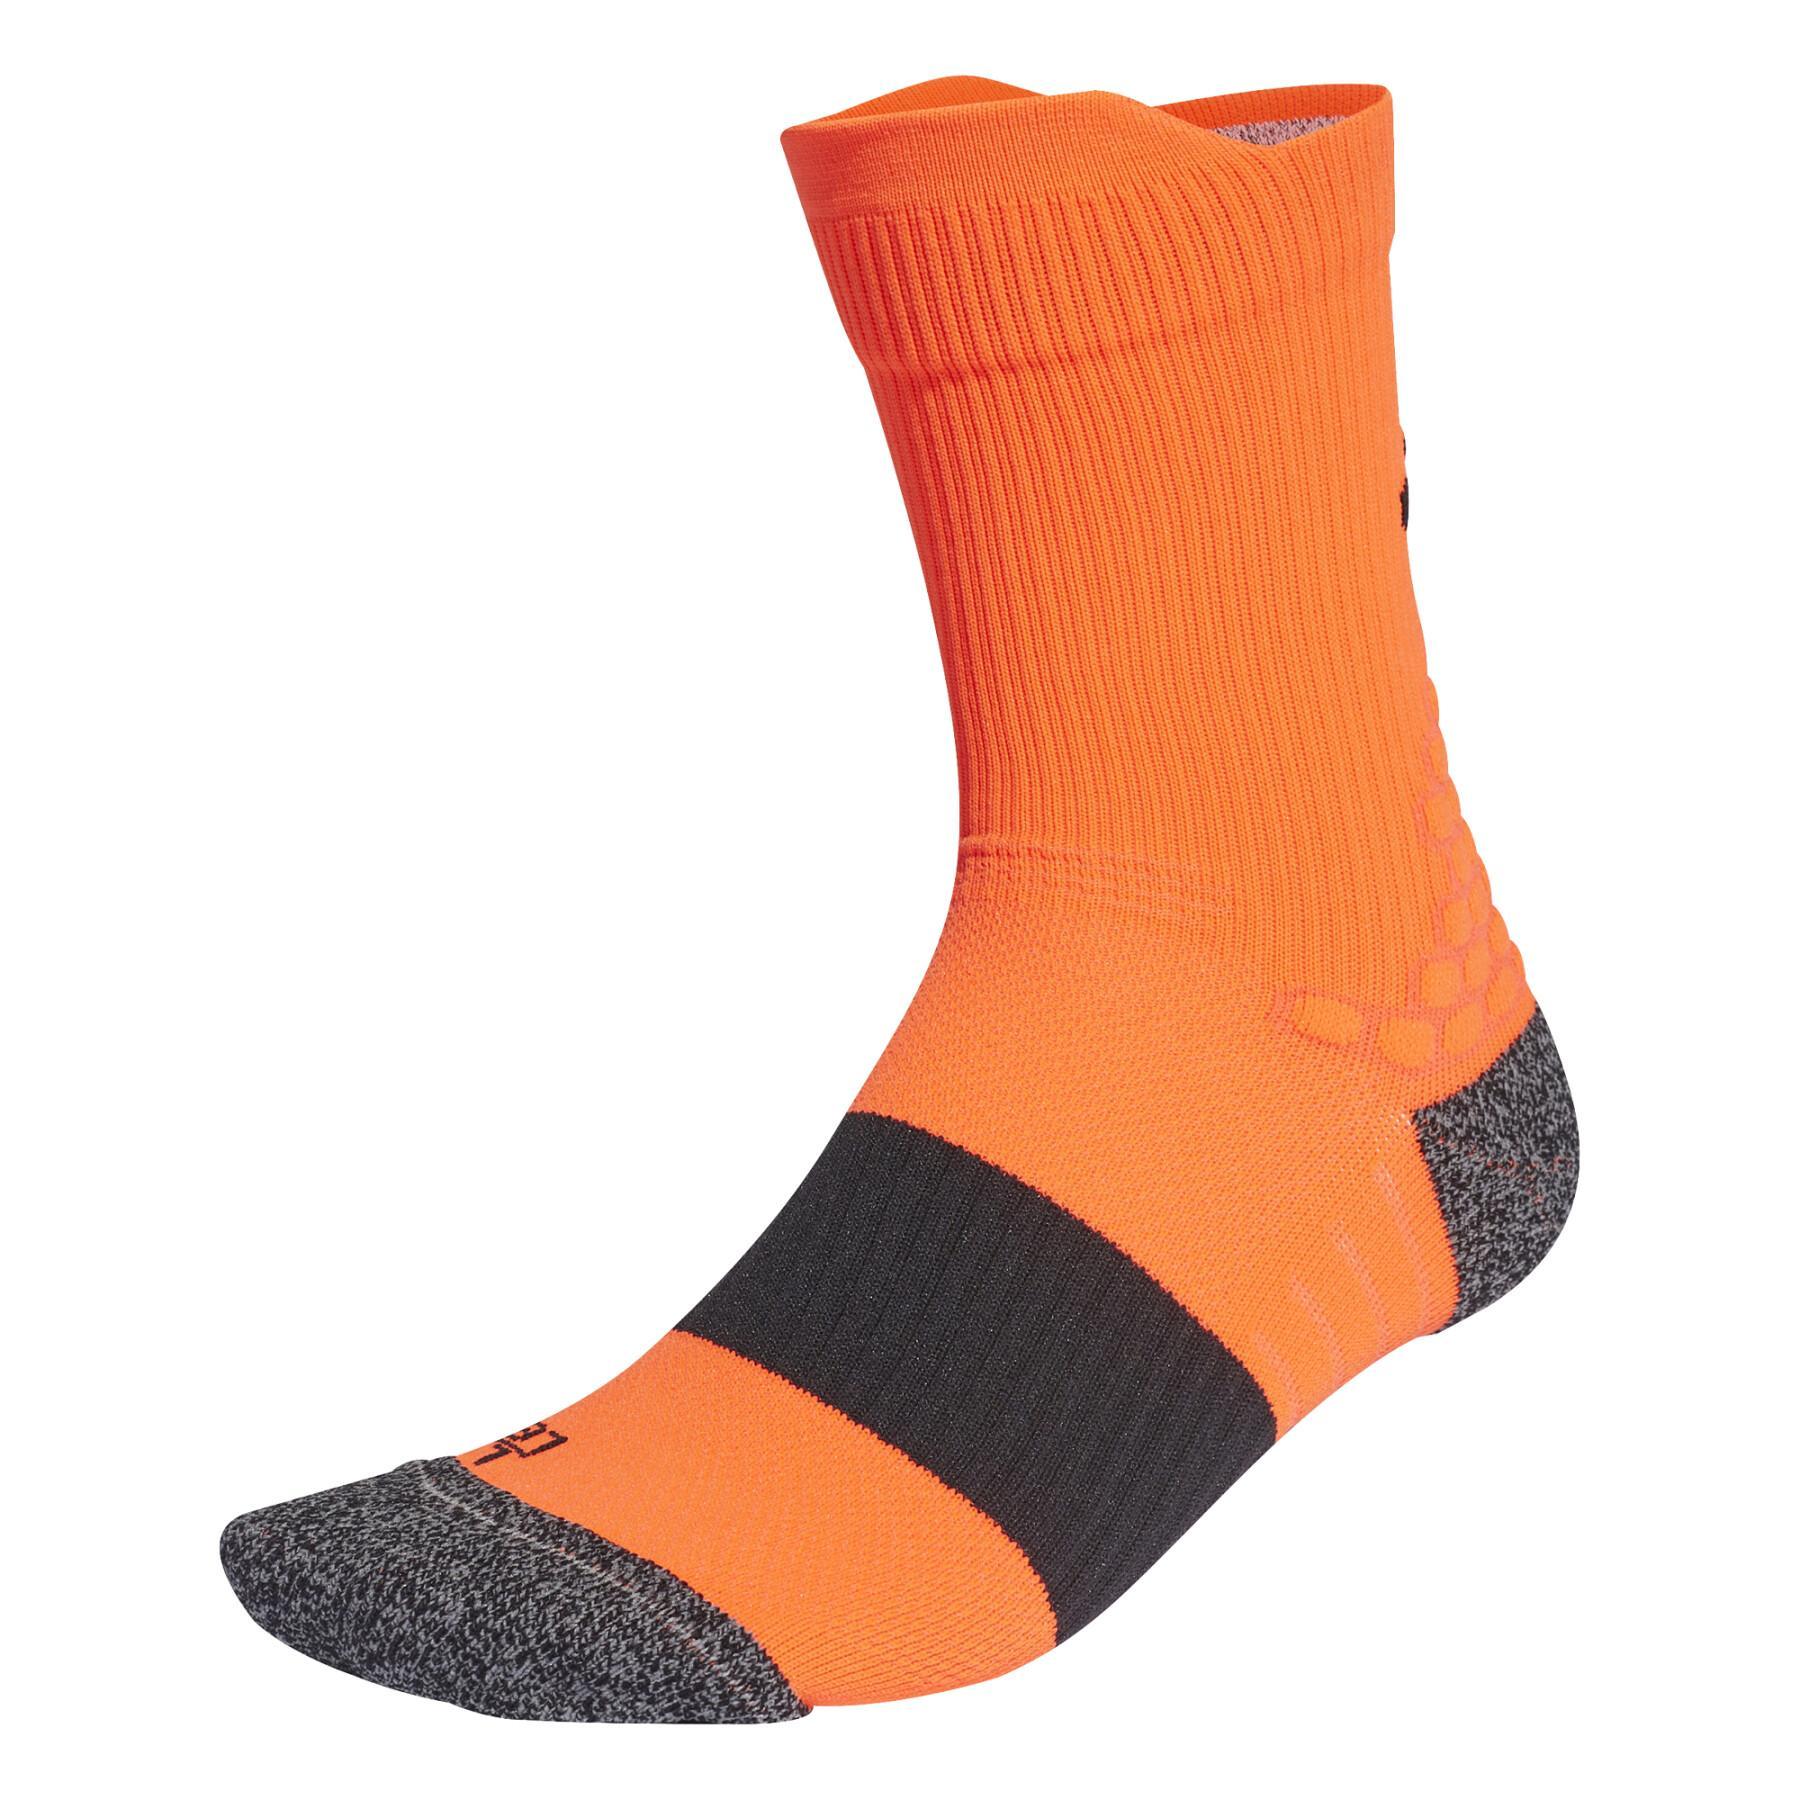 Socks adidas Running Ultralightperformance